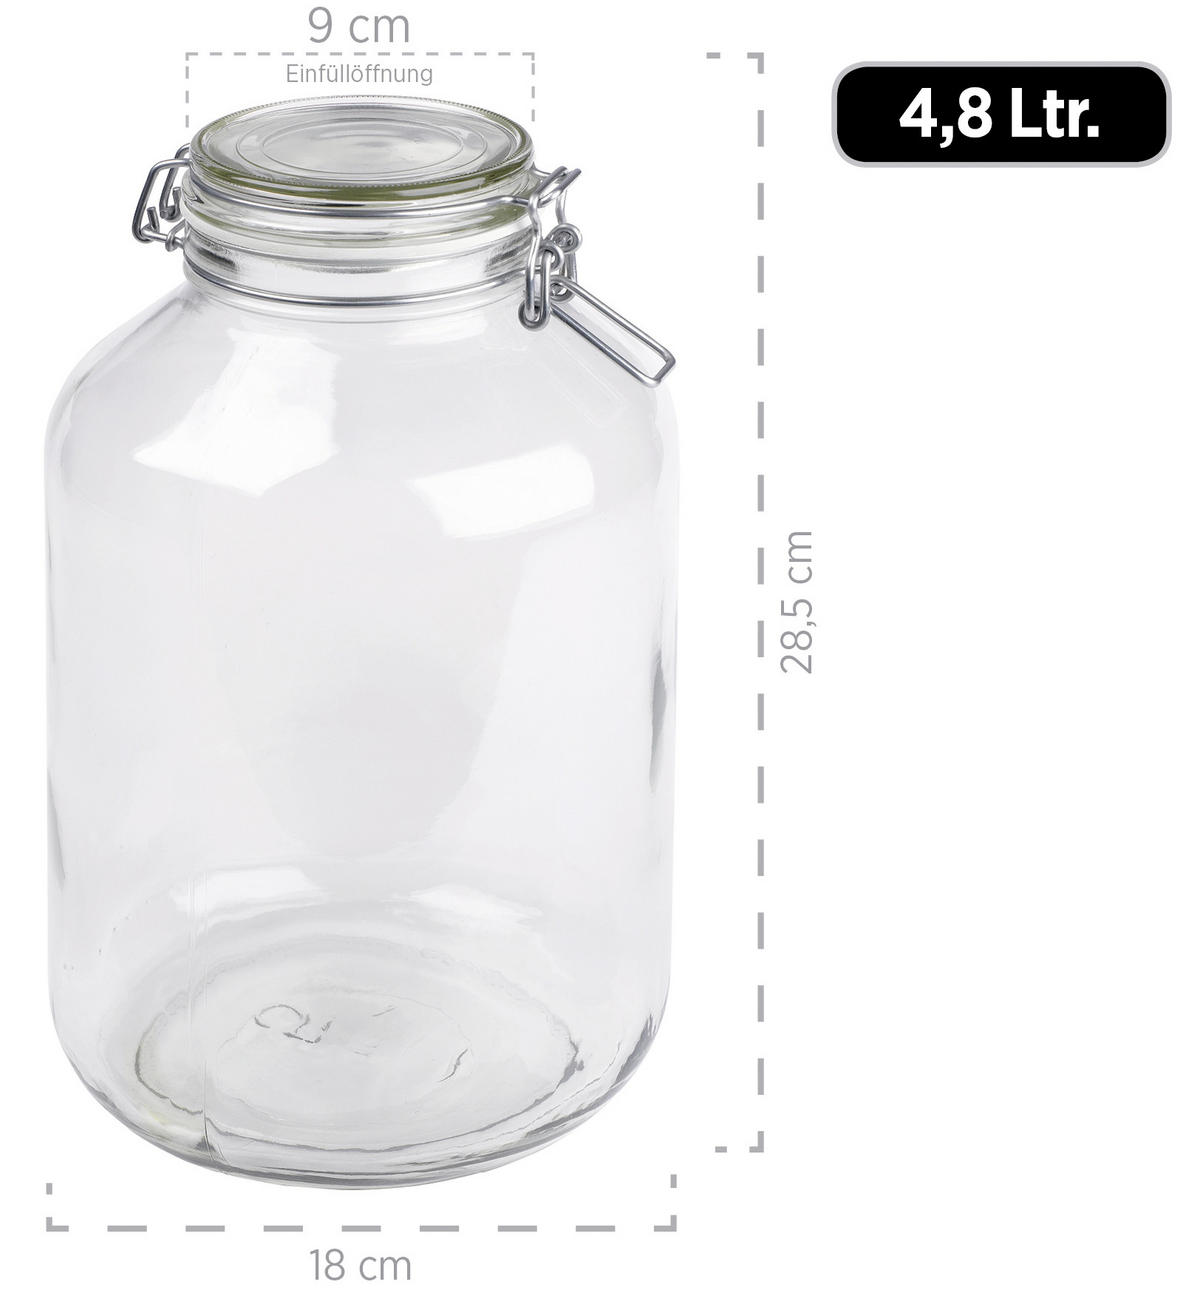 Einmachglas-Set online 4,8 Liter 2-teilig kaufen